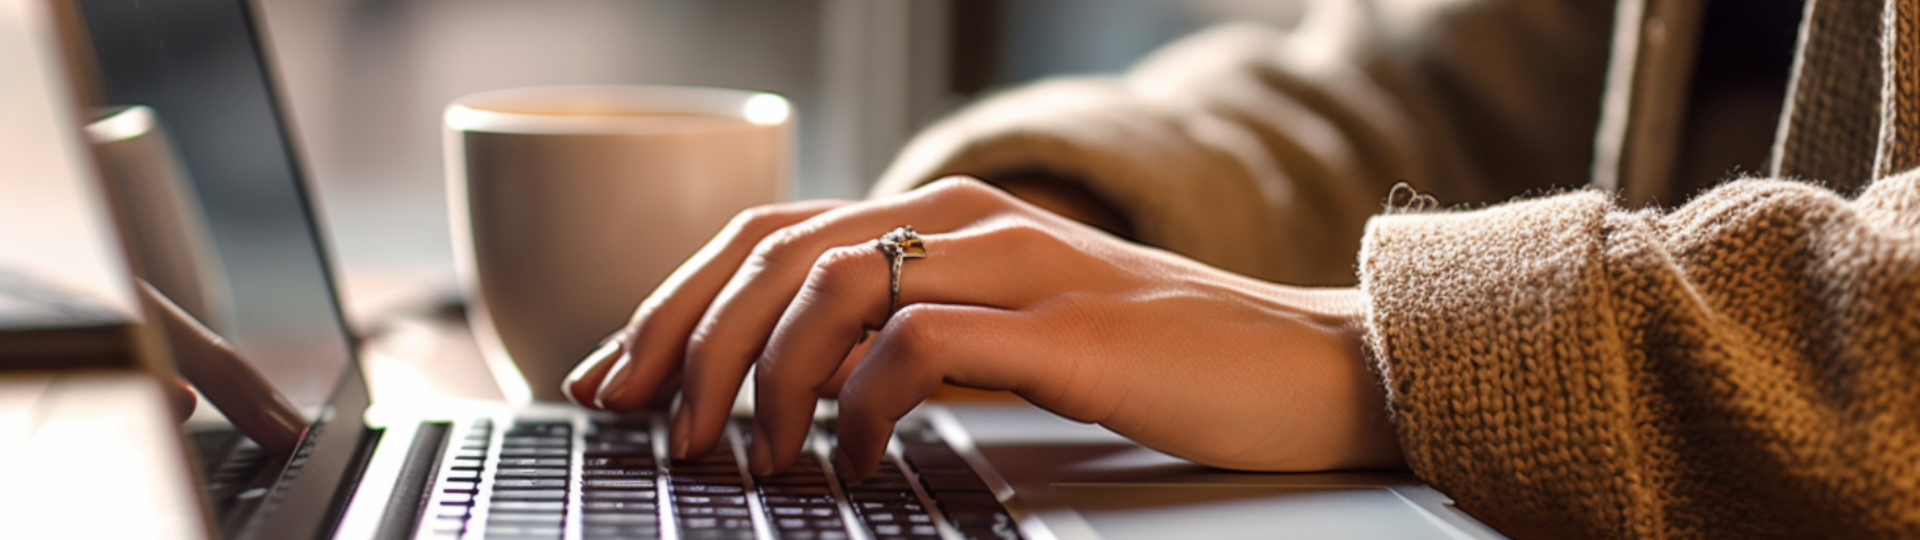 una mujer con un anillo en el dedo izquierdo está escribiendo en una computadora portátil